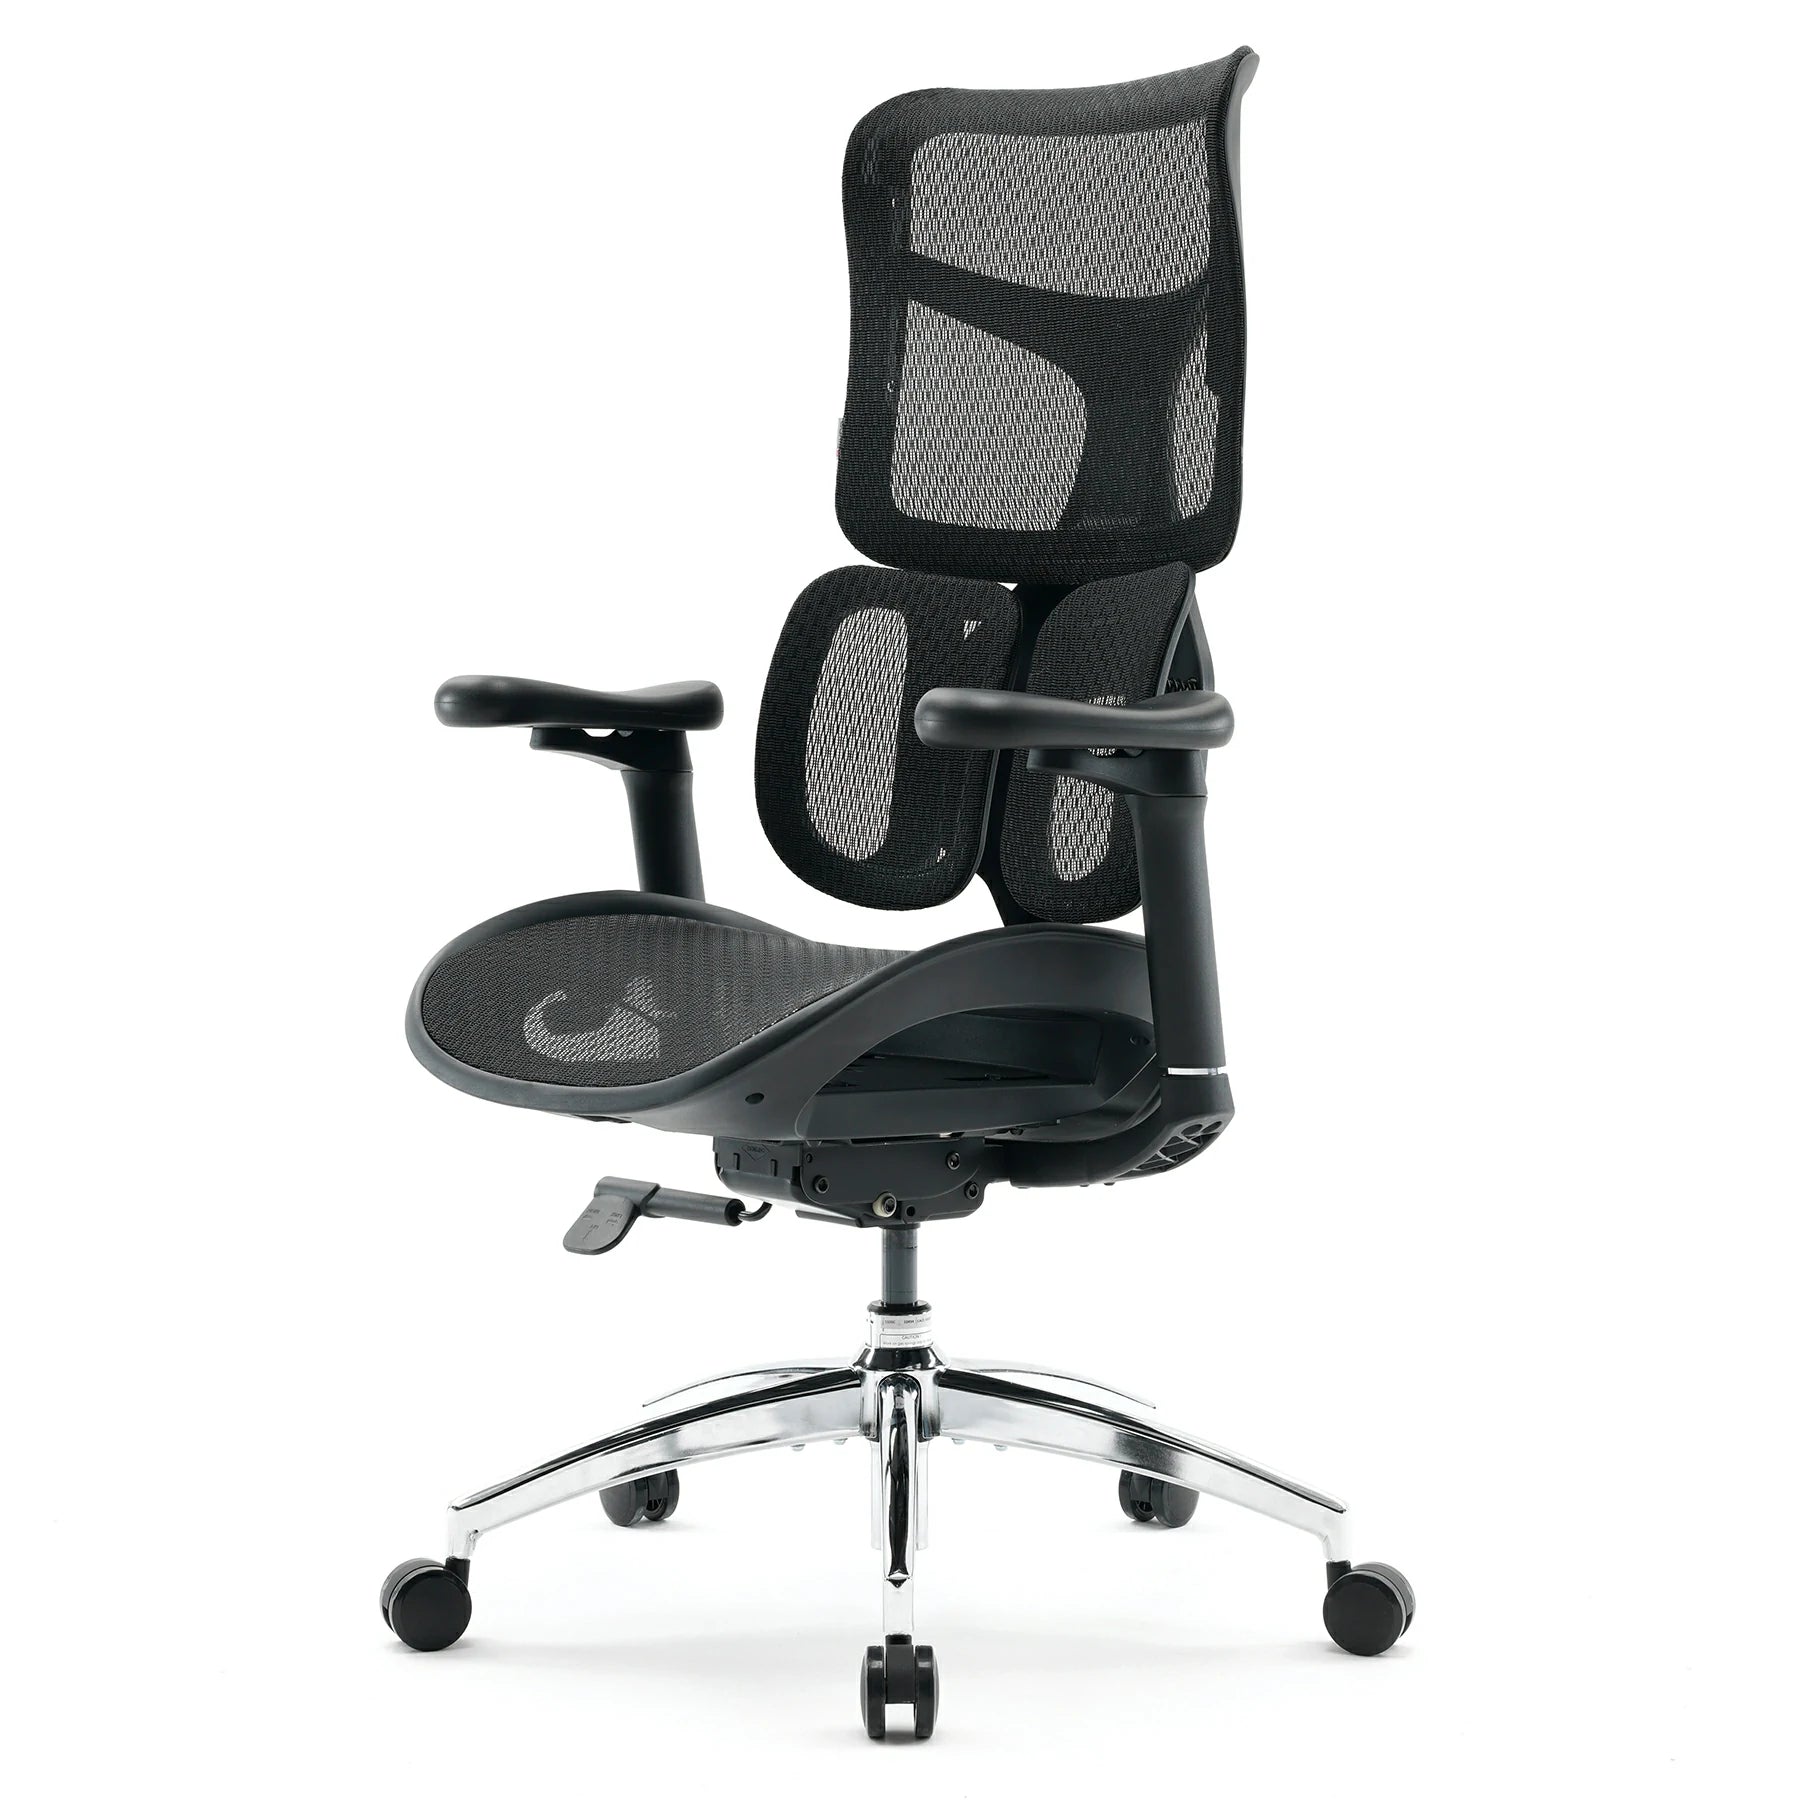 <tc>(nouveau) Sihoo Doro S100 chaise de bureau ergonomique avec Double Support lombaire dynamique</tc>